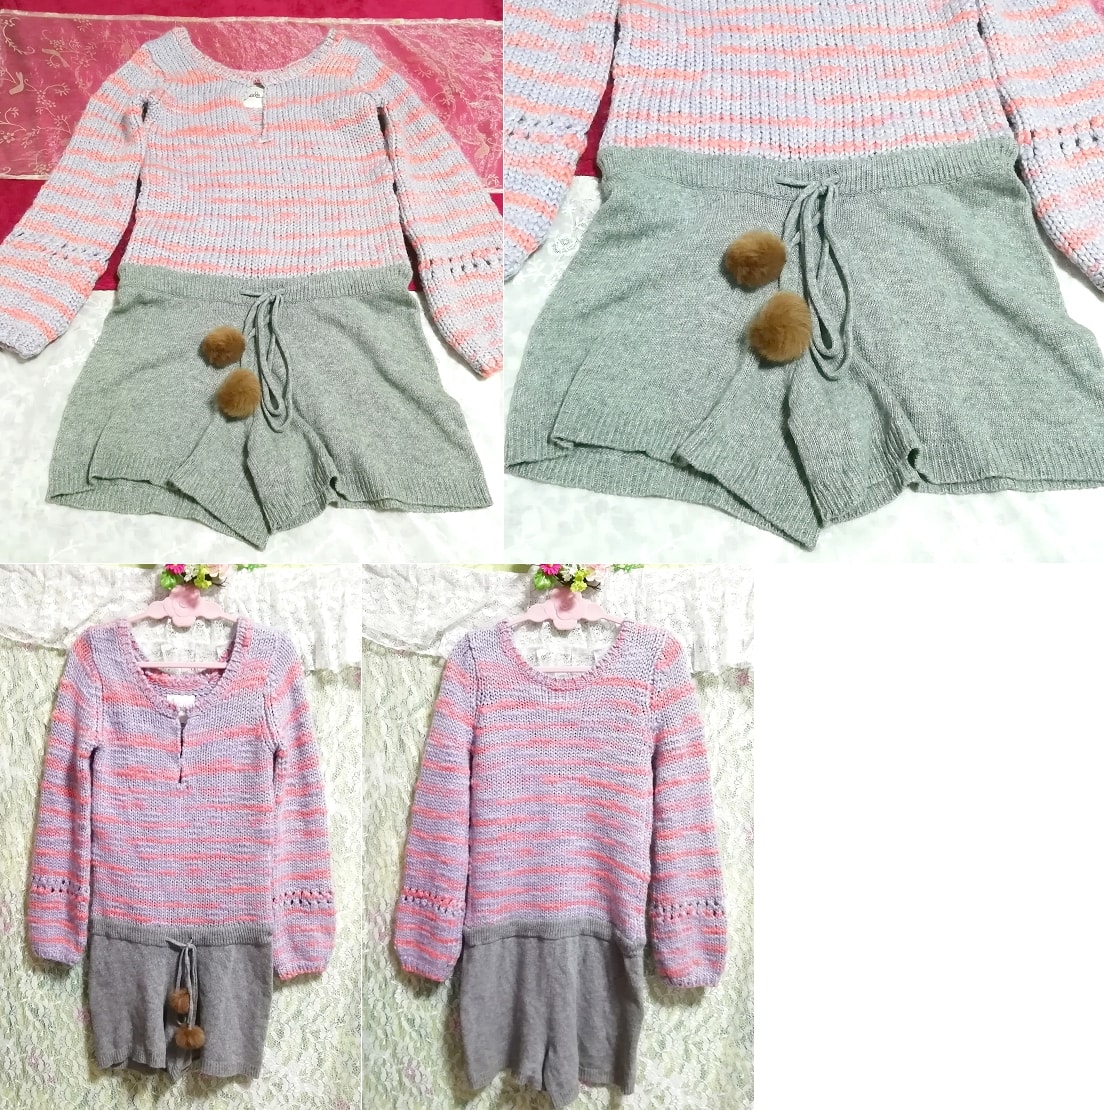 青ピンク編みニット灰グレーキュロットラビットファーボンボンワンピース/セーター Blue pink knit ash gray culottes onepiece sweater, ニット、セーター, 長袖, Mサイズ